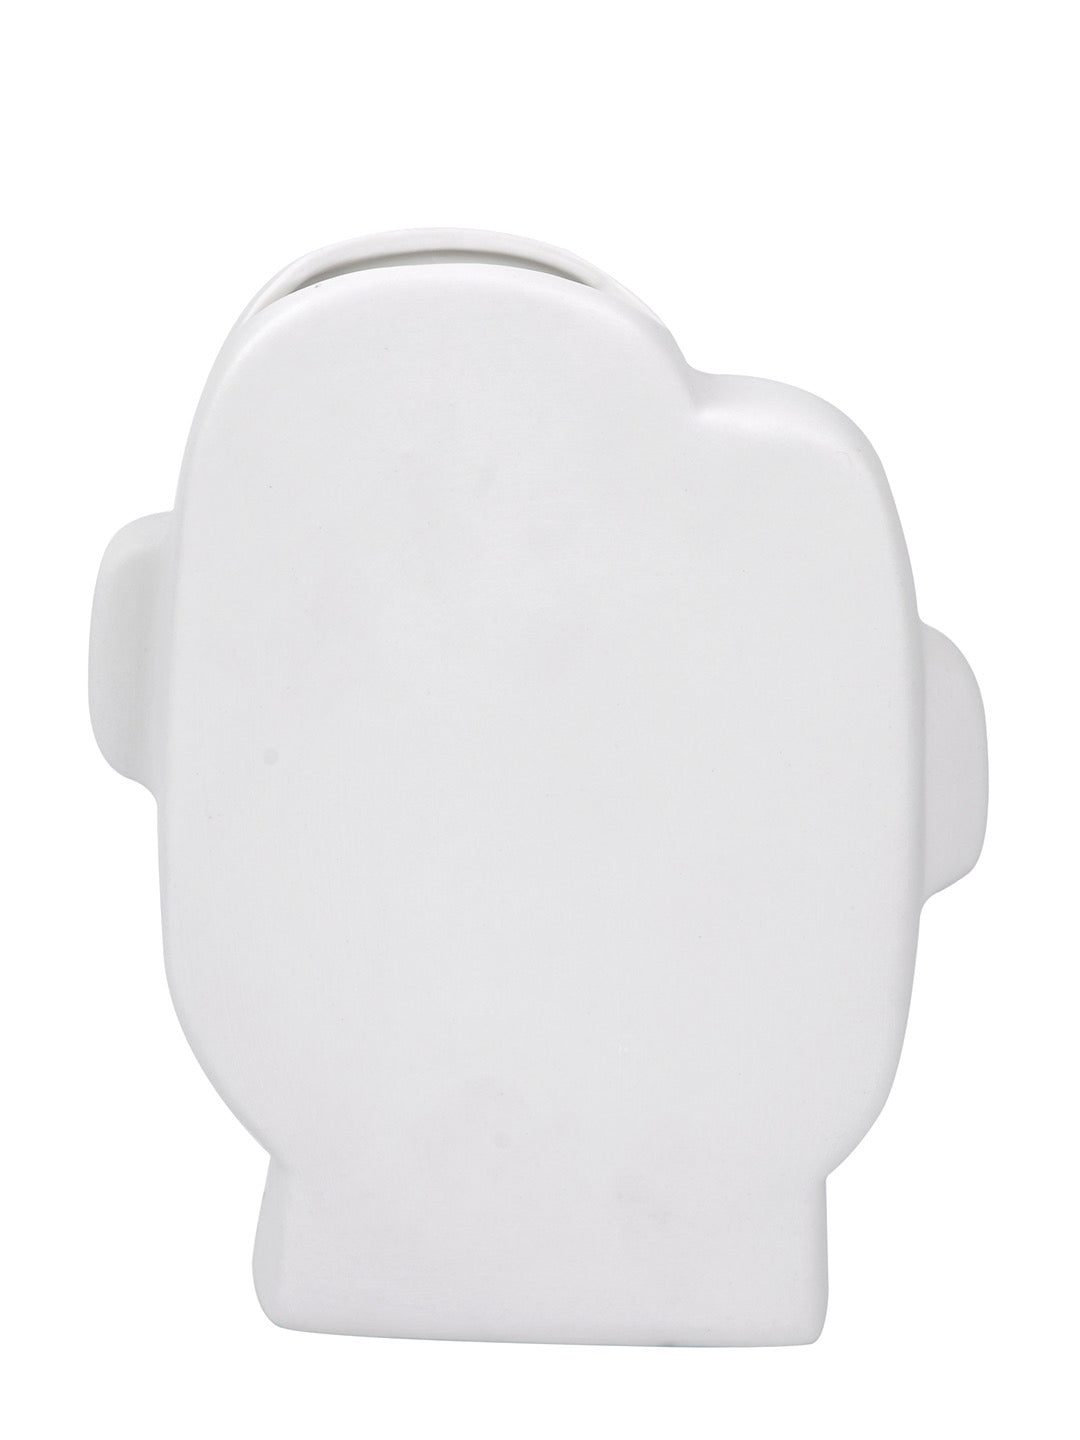 Face Like White Ceramic Vase - Default Title (VASC22481)